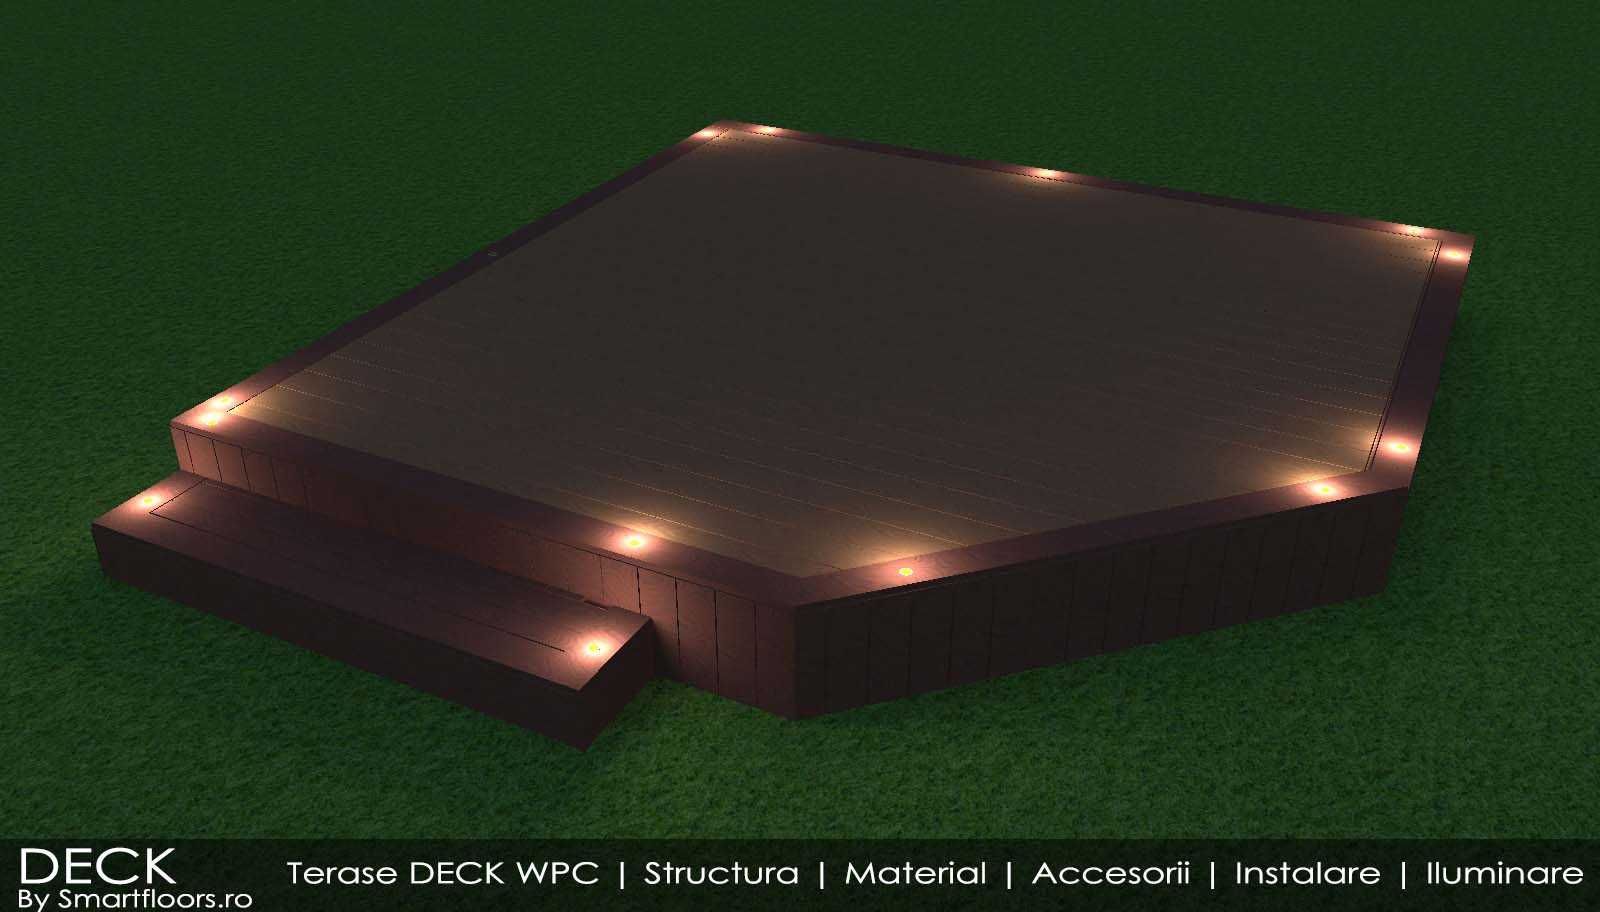 Deck WPC pardoseala terasa, instalare & garantie